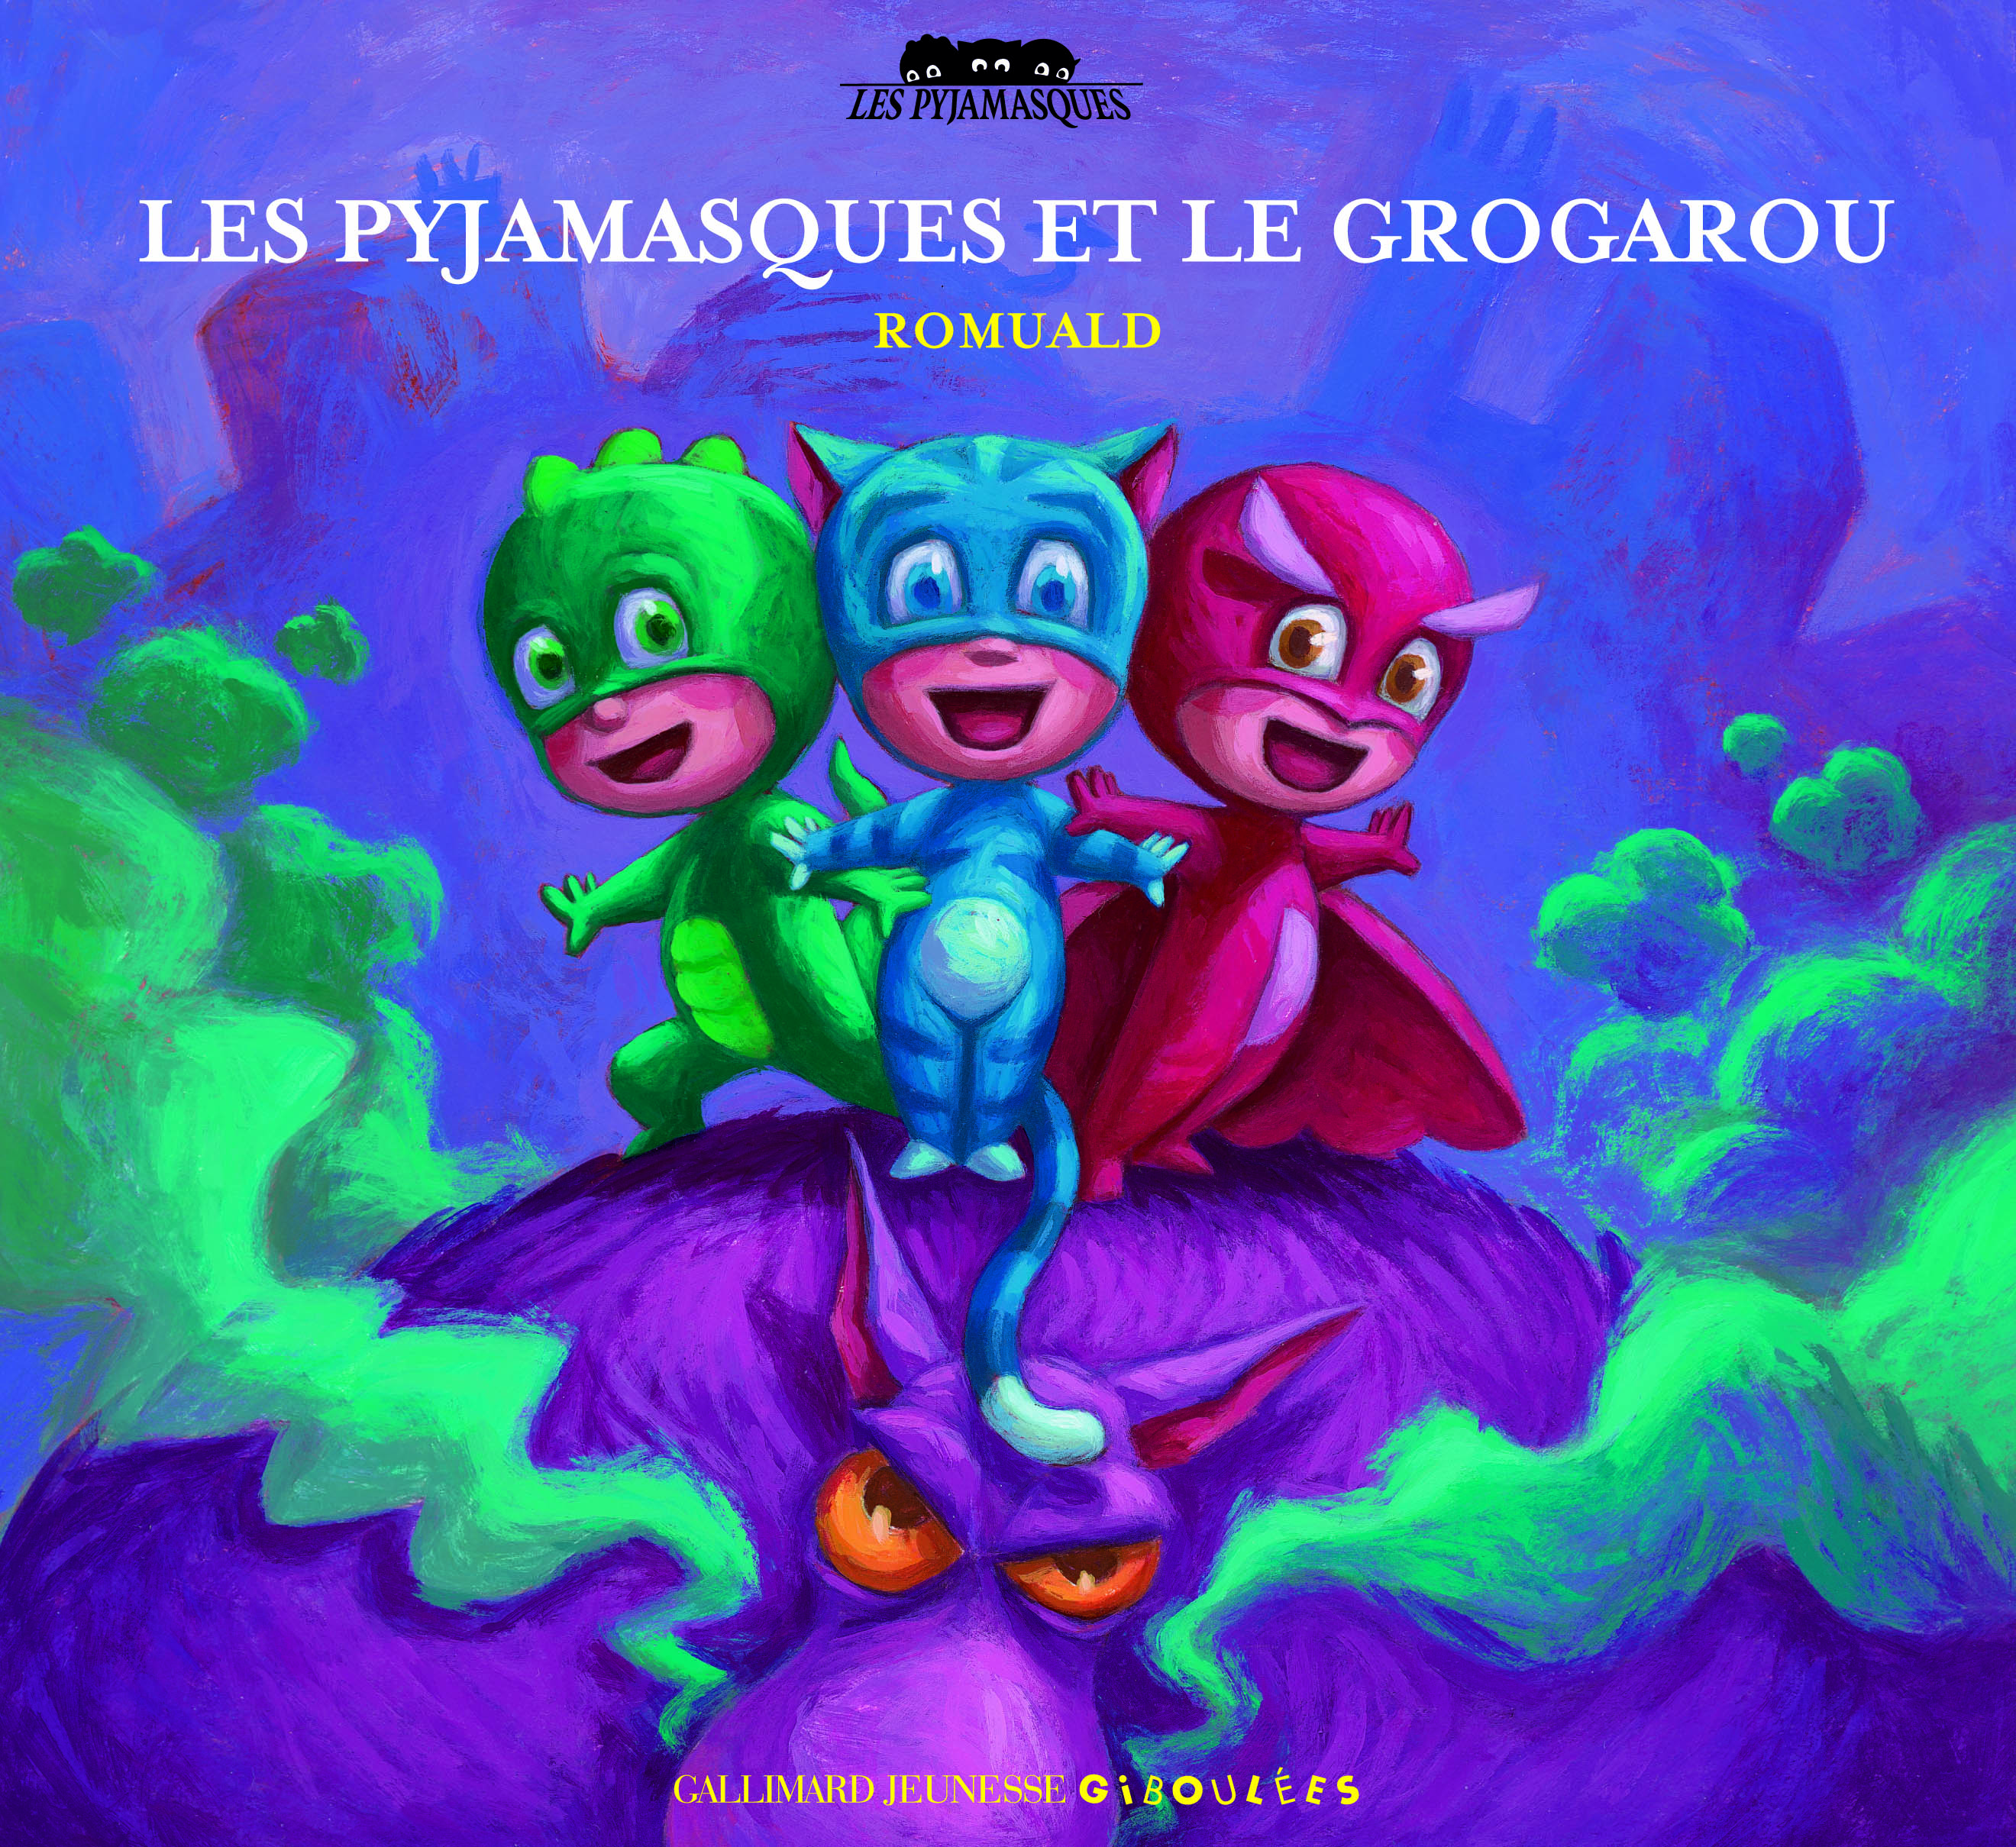 Les Pyjamasques et le Grogarou, PJ Masks Wiki